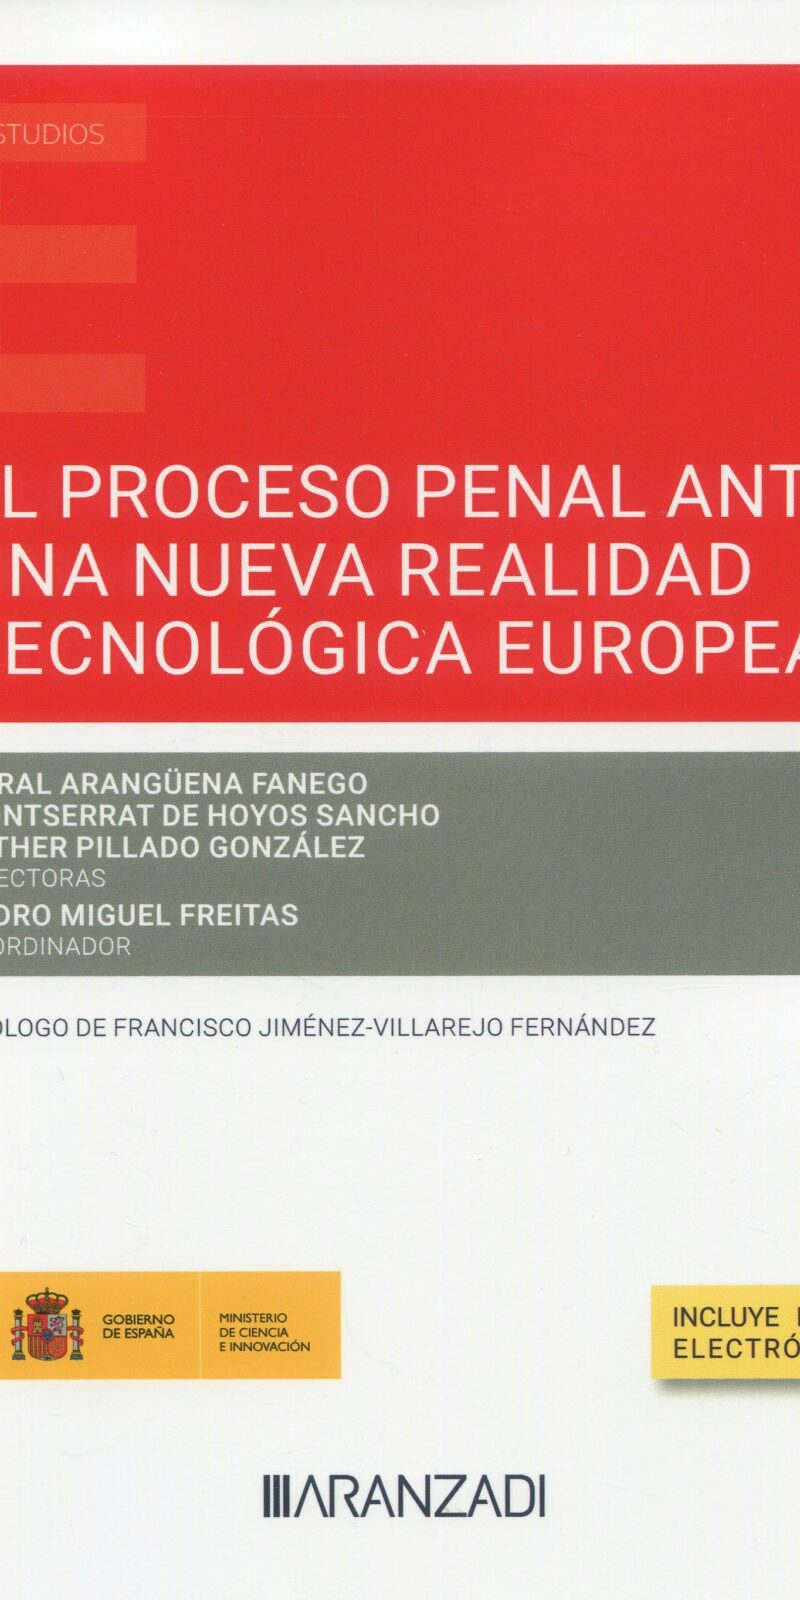 Proceso penal ante una nueva realidad tecnológica europea 9788411258470